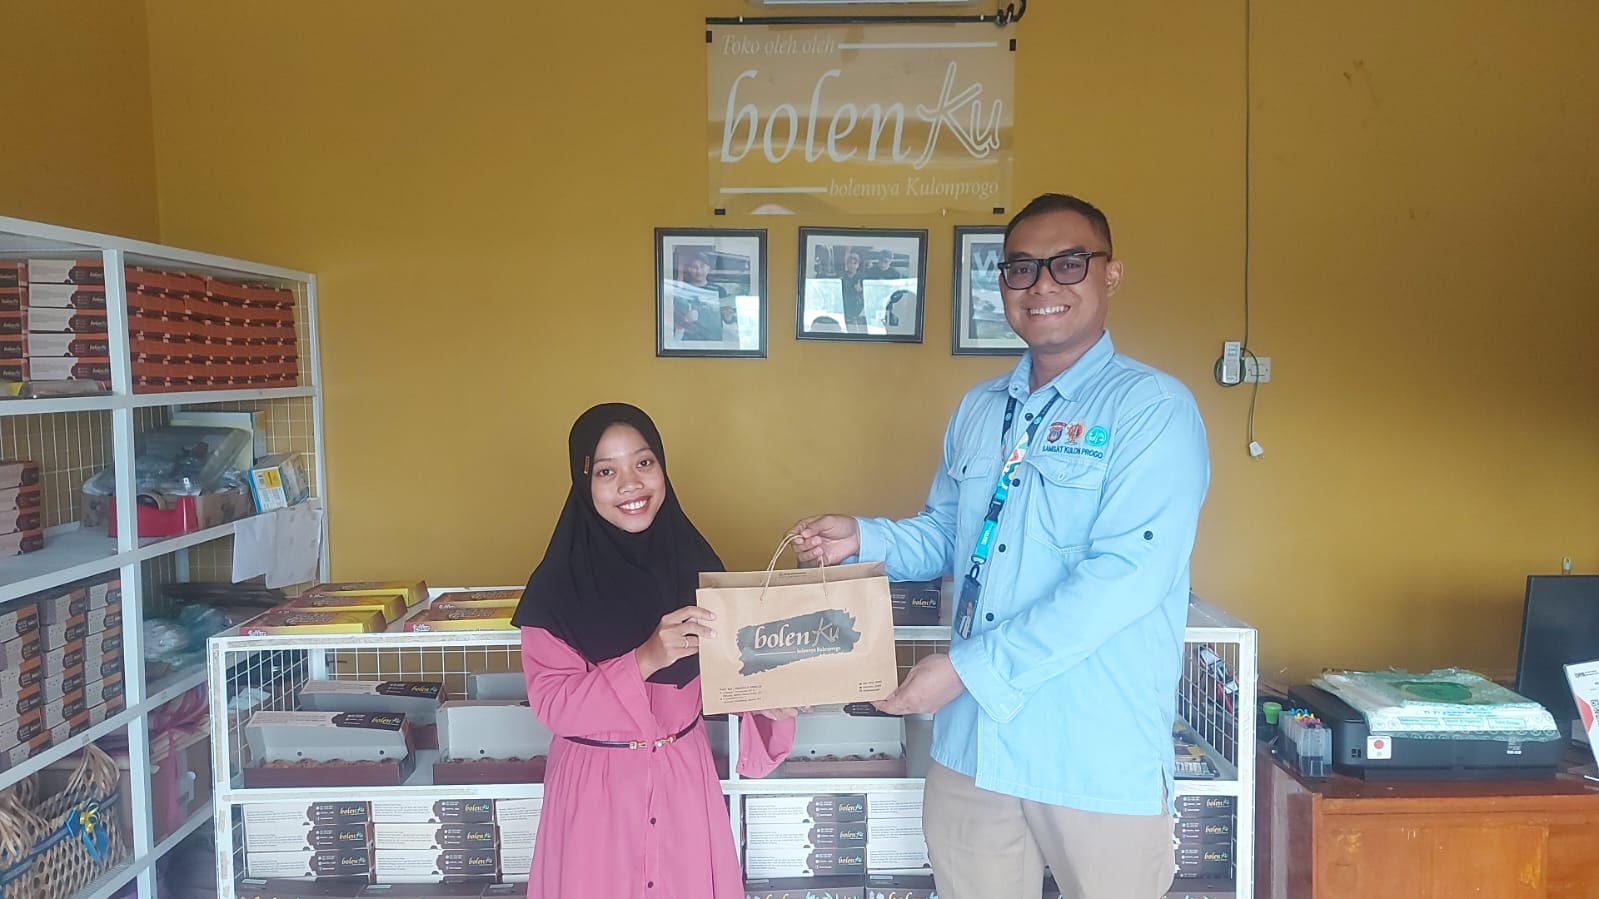 Kunjungan Jasa Raharja ke UMKM Roti Bolenku Kulon Progo 